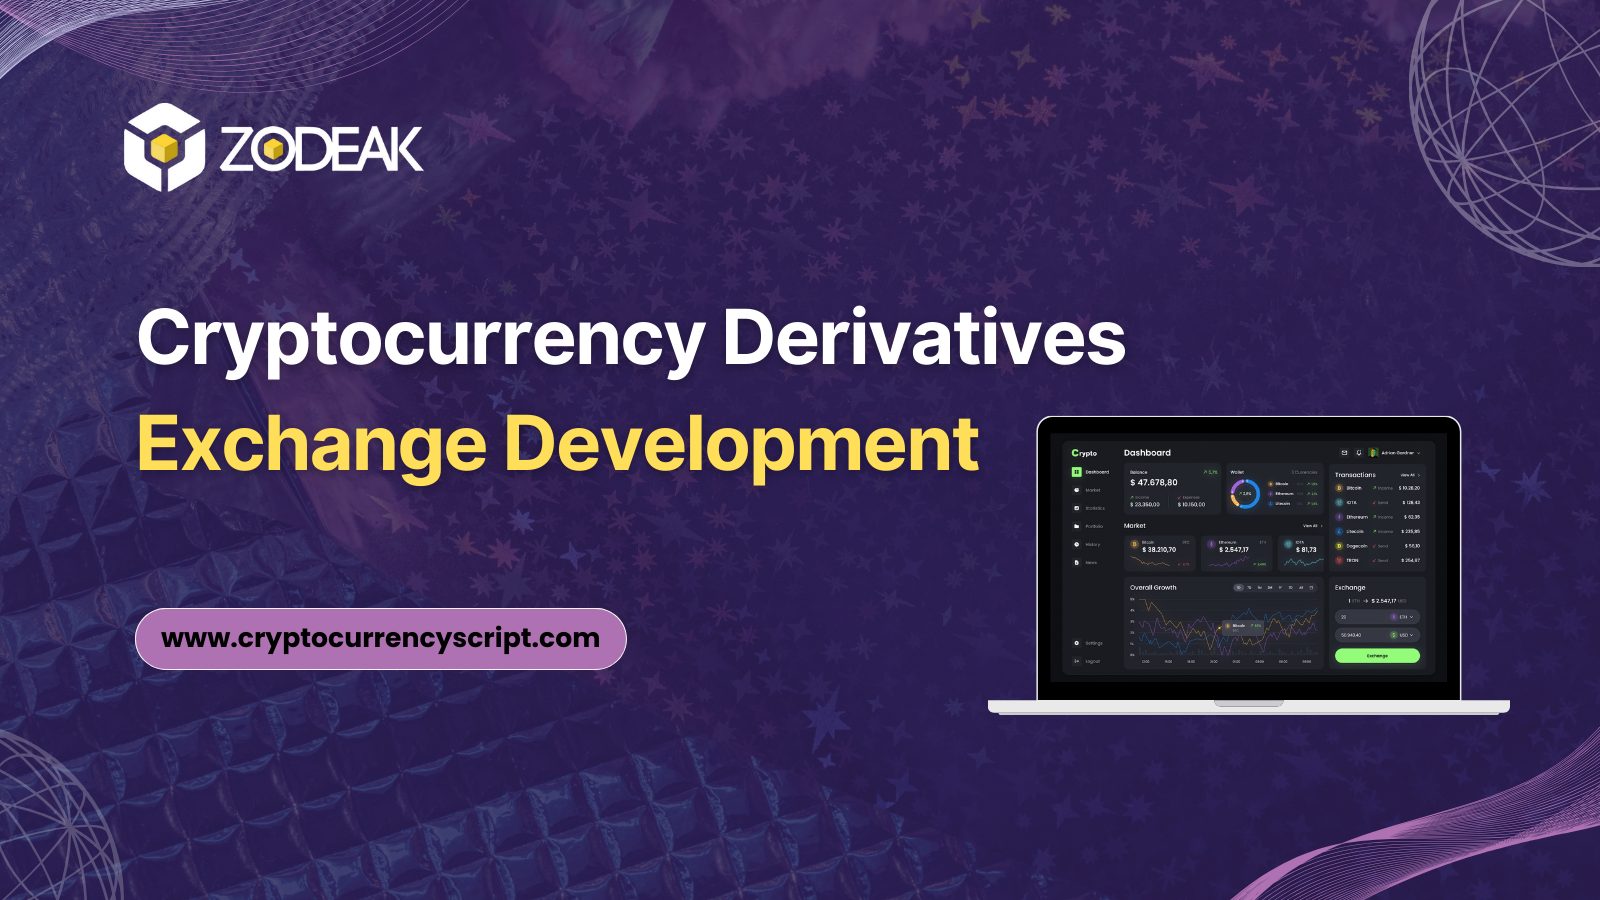 Crypto Derivative Exchange Development Company - Zodeak